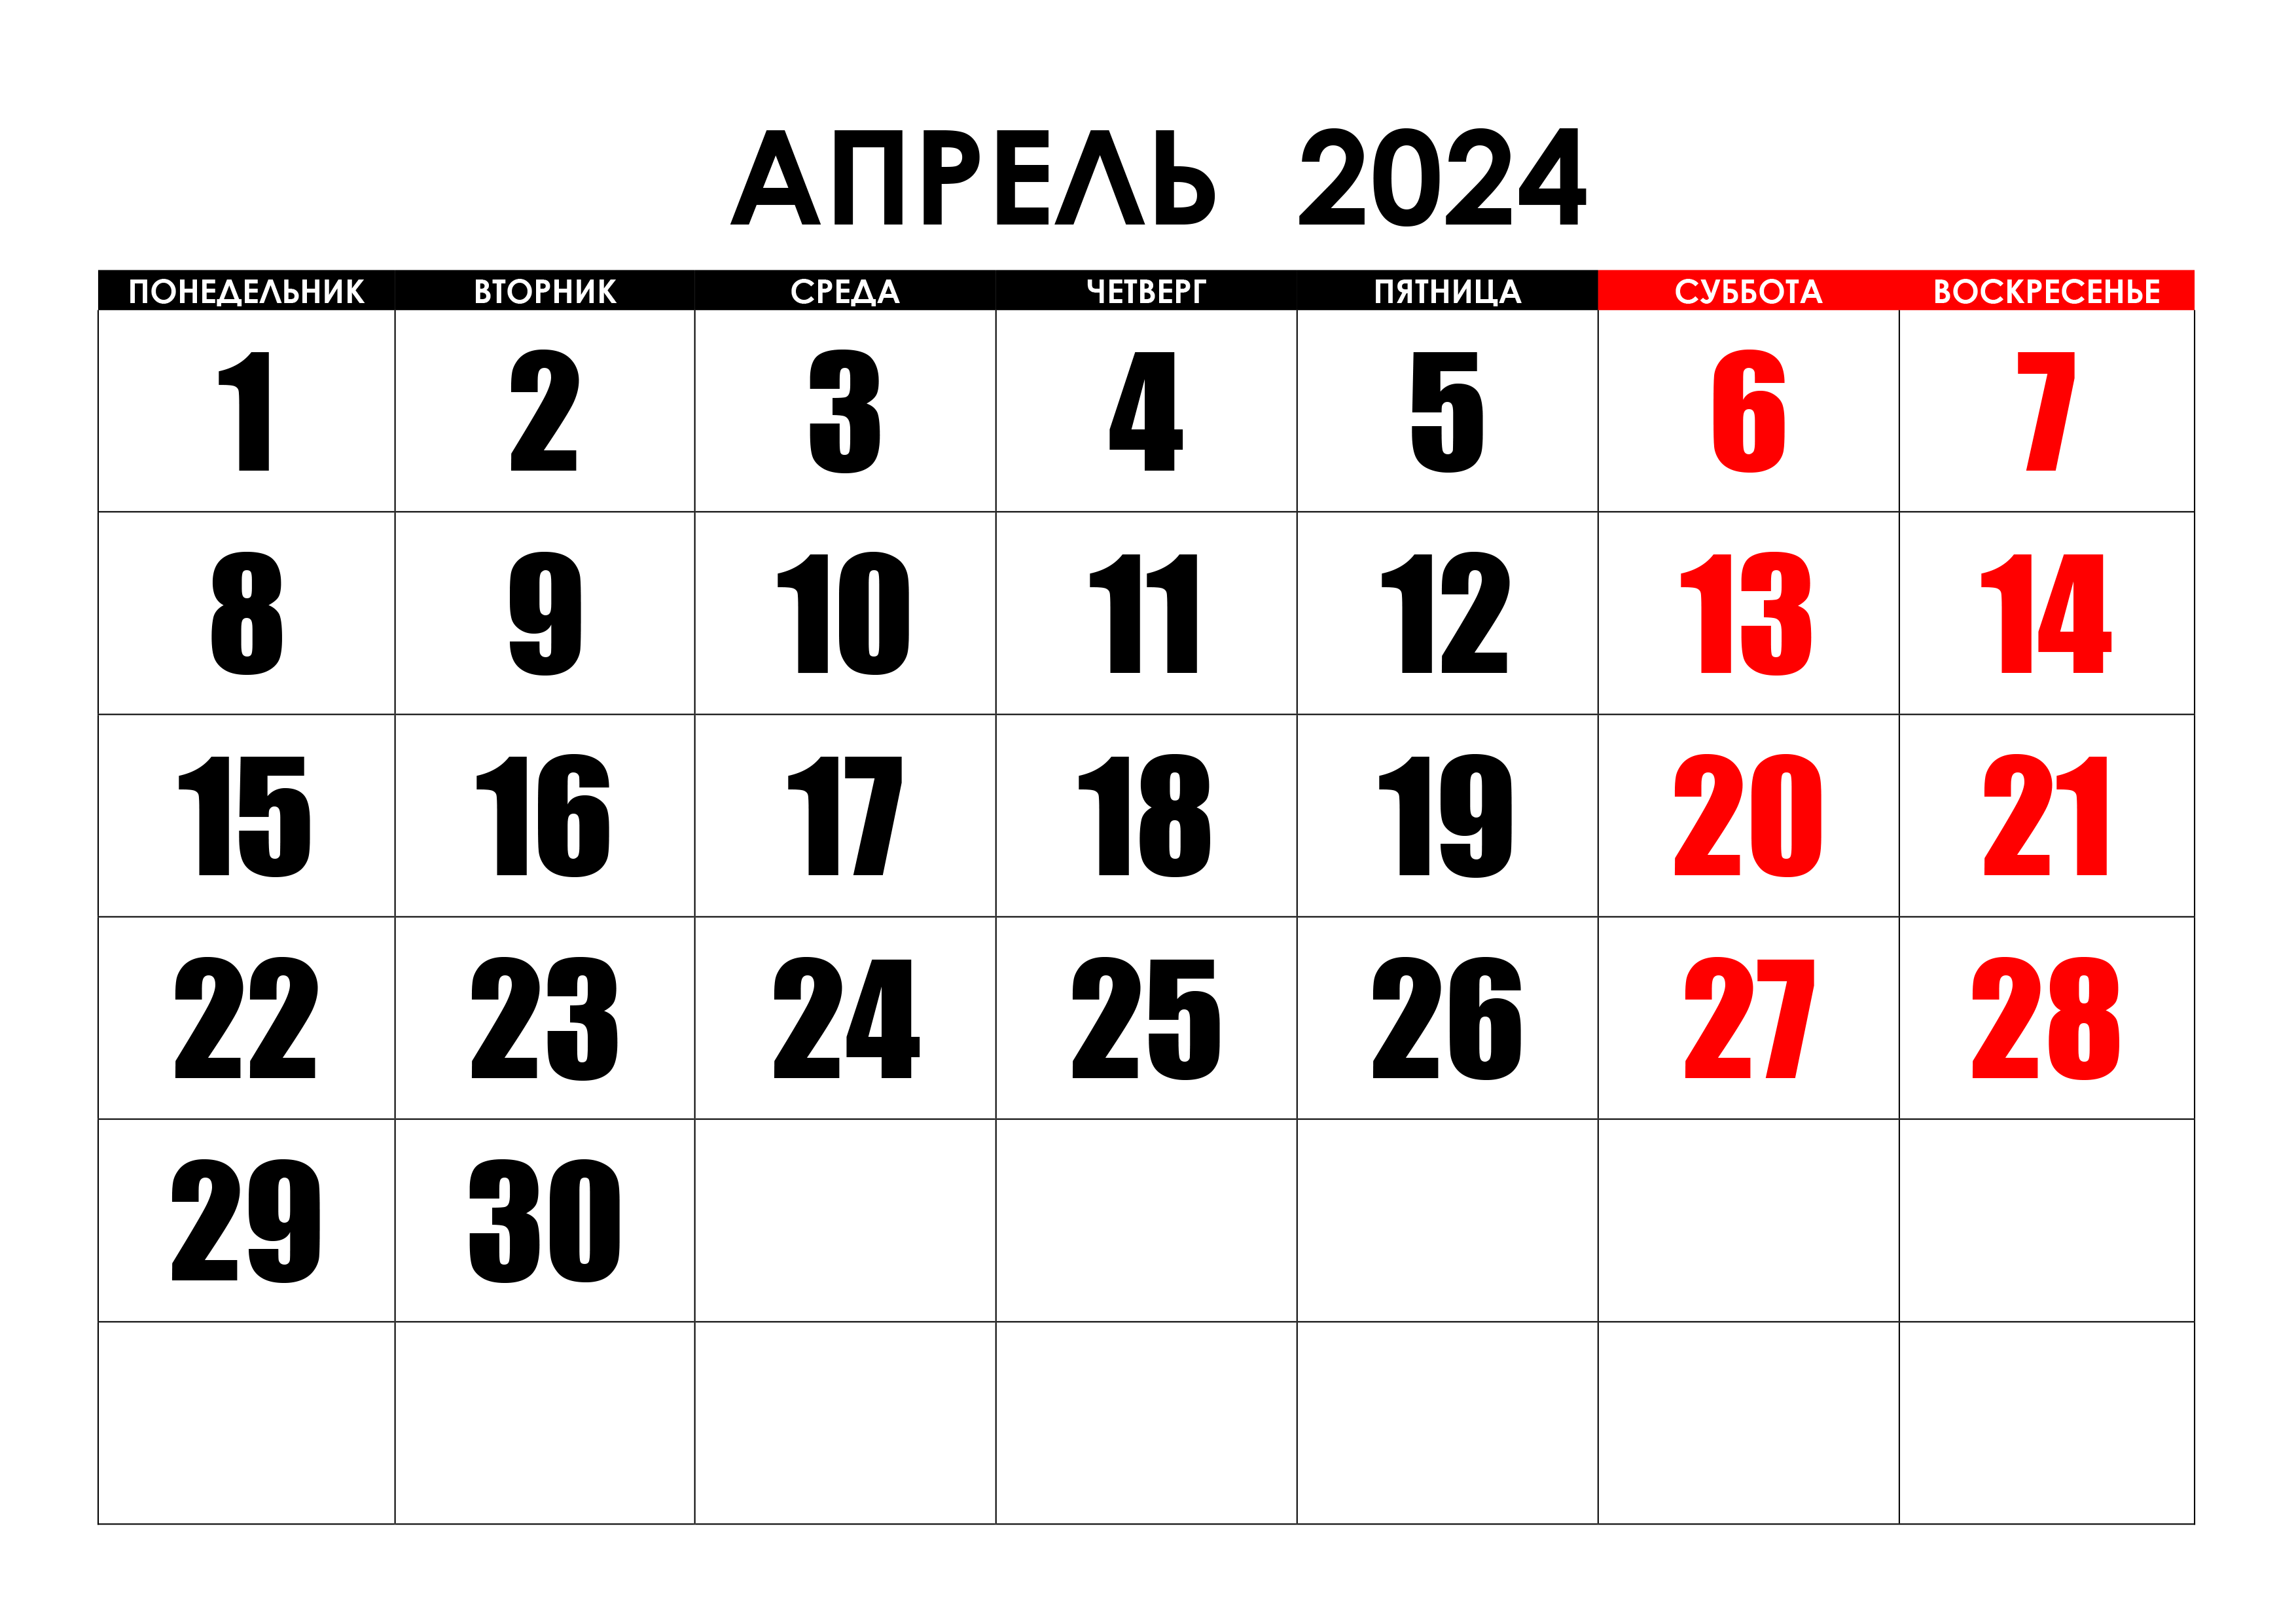 Какие праздники будут в апреле 2024 года. Календарь август 2022. Календарь на май 2022 года. Календарь на август 2022г. Календарь на пвгуст 2022года.